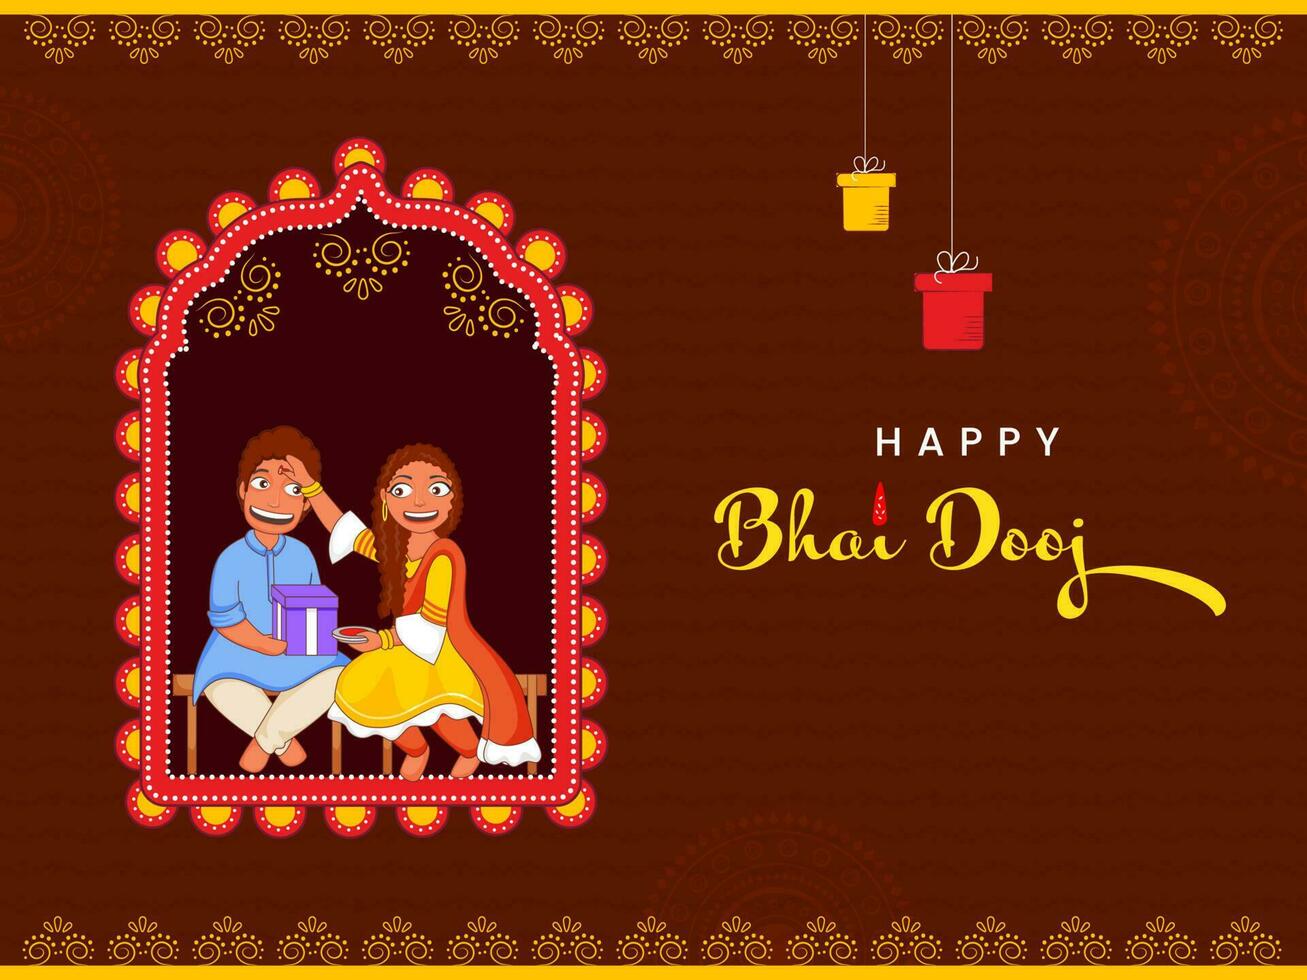 vrolijk zus toepassen tilak of Mark naar voorhoofd van haar broer Aan bruin achtergrond voor gelukkig bhai dooj festival. vector